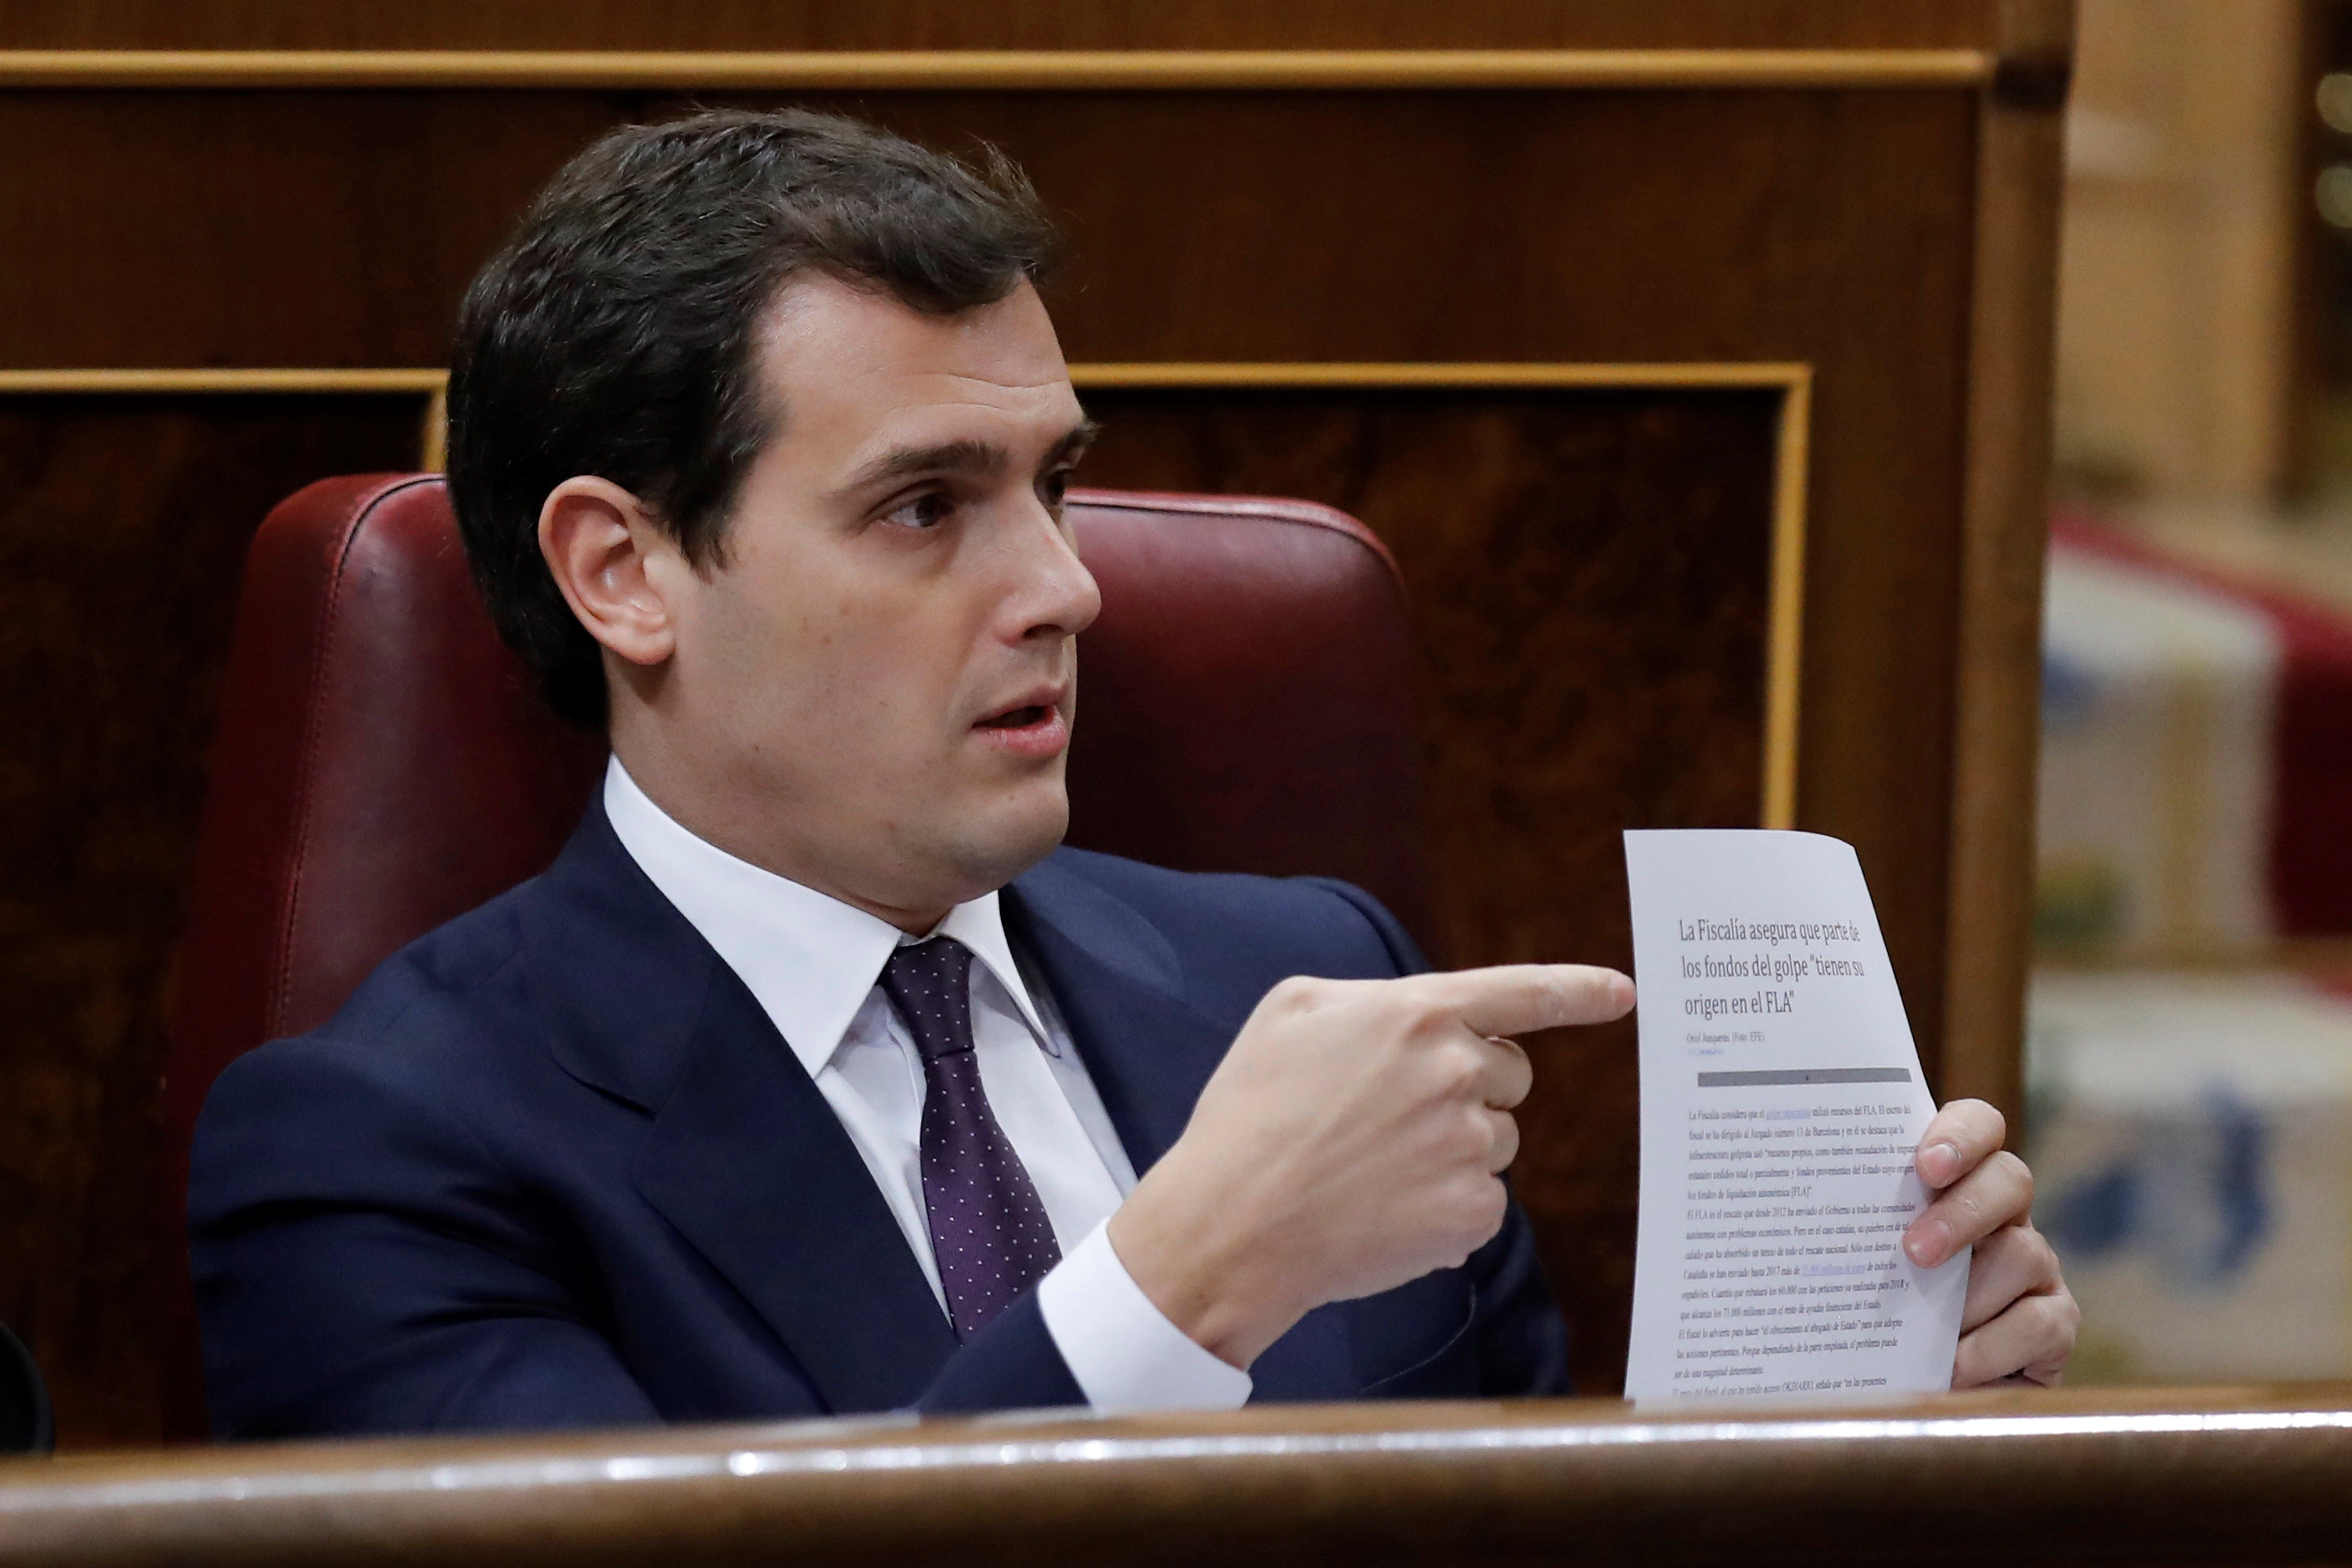 Rivera exigeix a Rajoy "dimissions" si l'1-O es va finançar amb el 
FLA